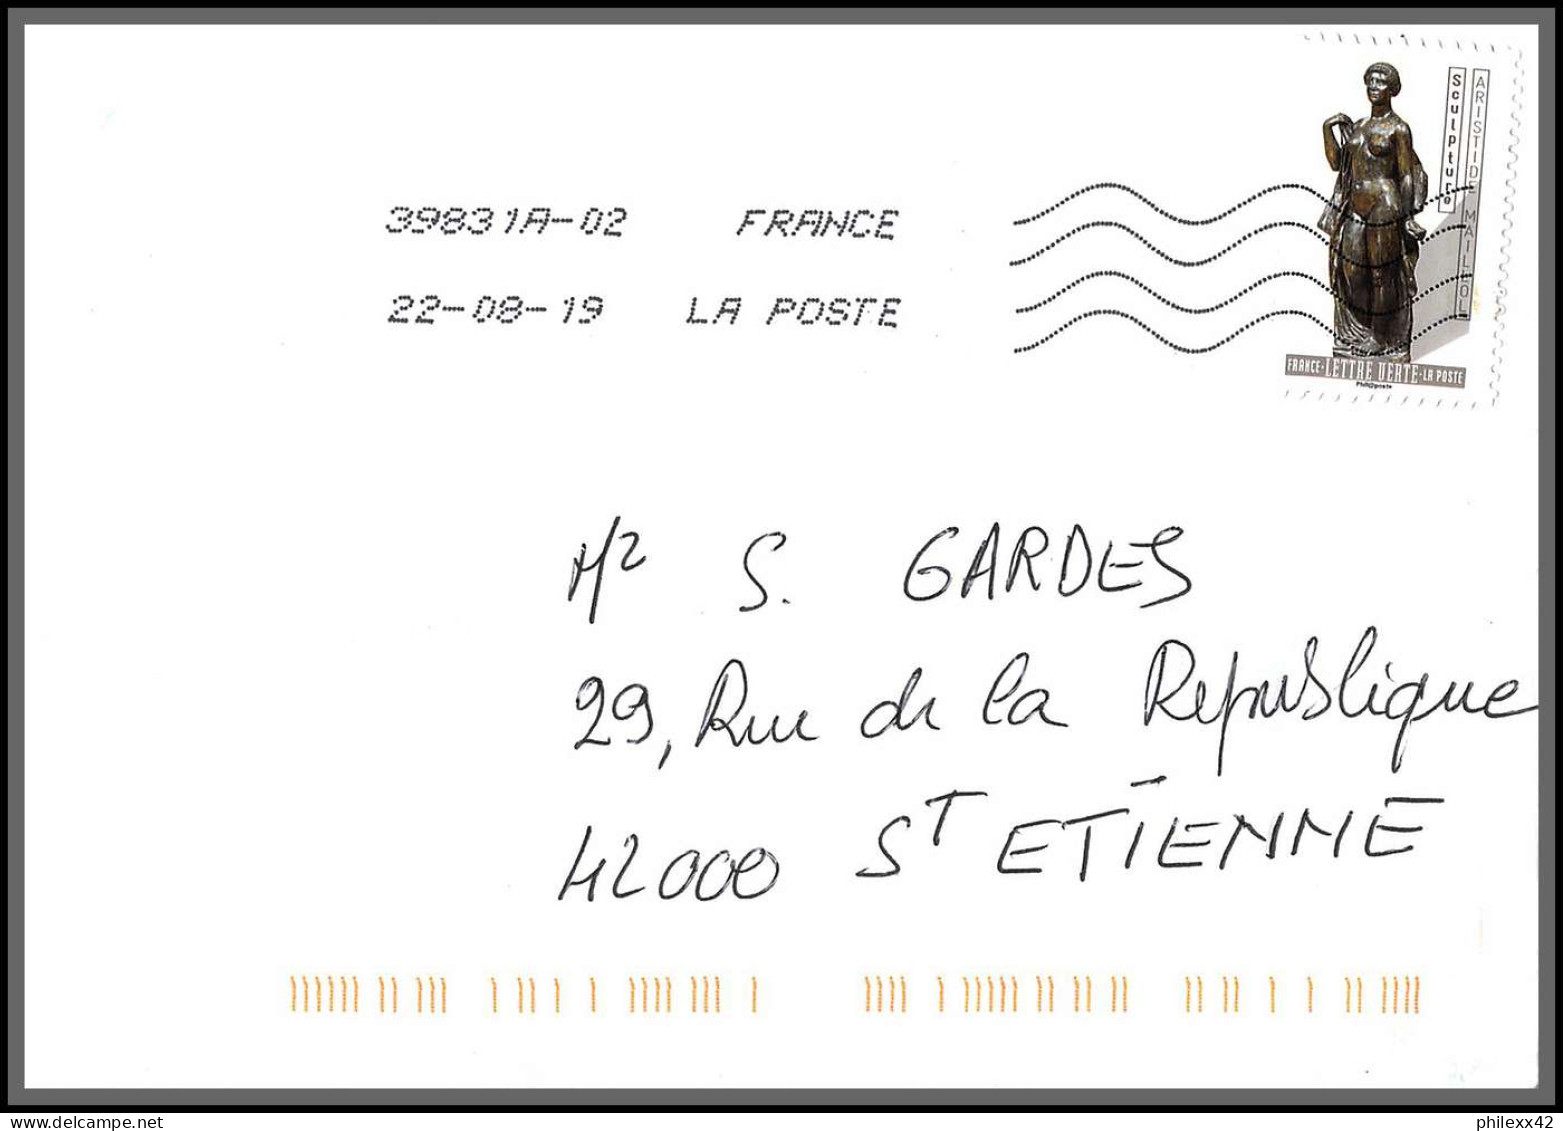 95731 - lot de 15 courriers lettres enveloppes de l'année 2019 divers affranchissements en EUROS